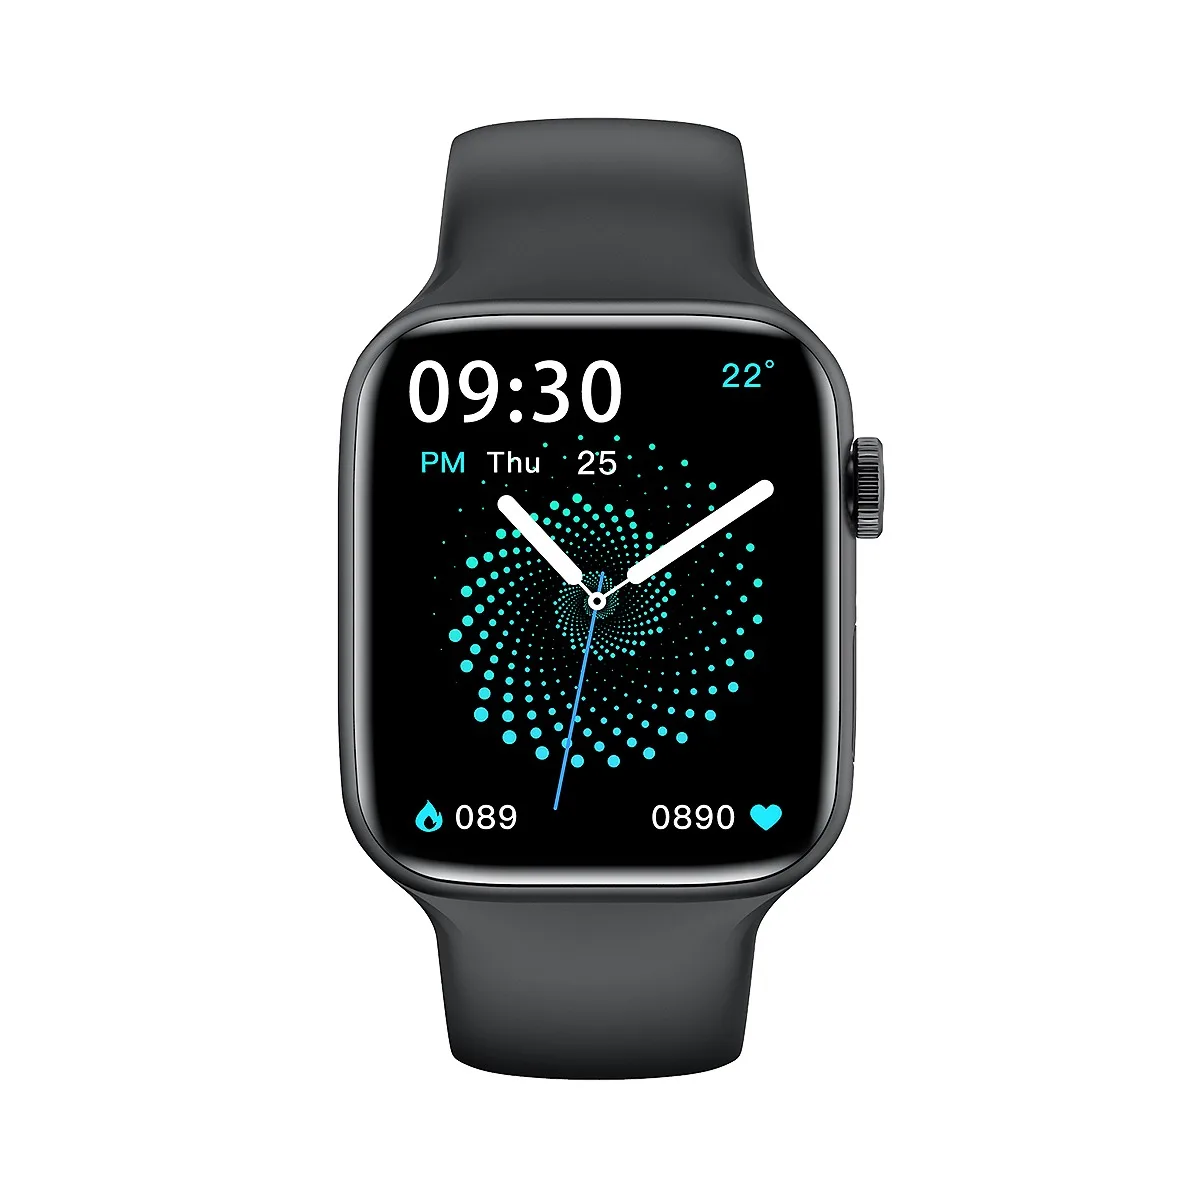 HW22 Смарт-часы BT4.0 Smartwatch Daily Assistant IP68 Водонепроницаемые спортивные часы для Iphone Huawei Xiaomi Телефонов Android 2023 Новинка